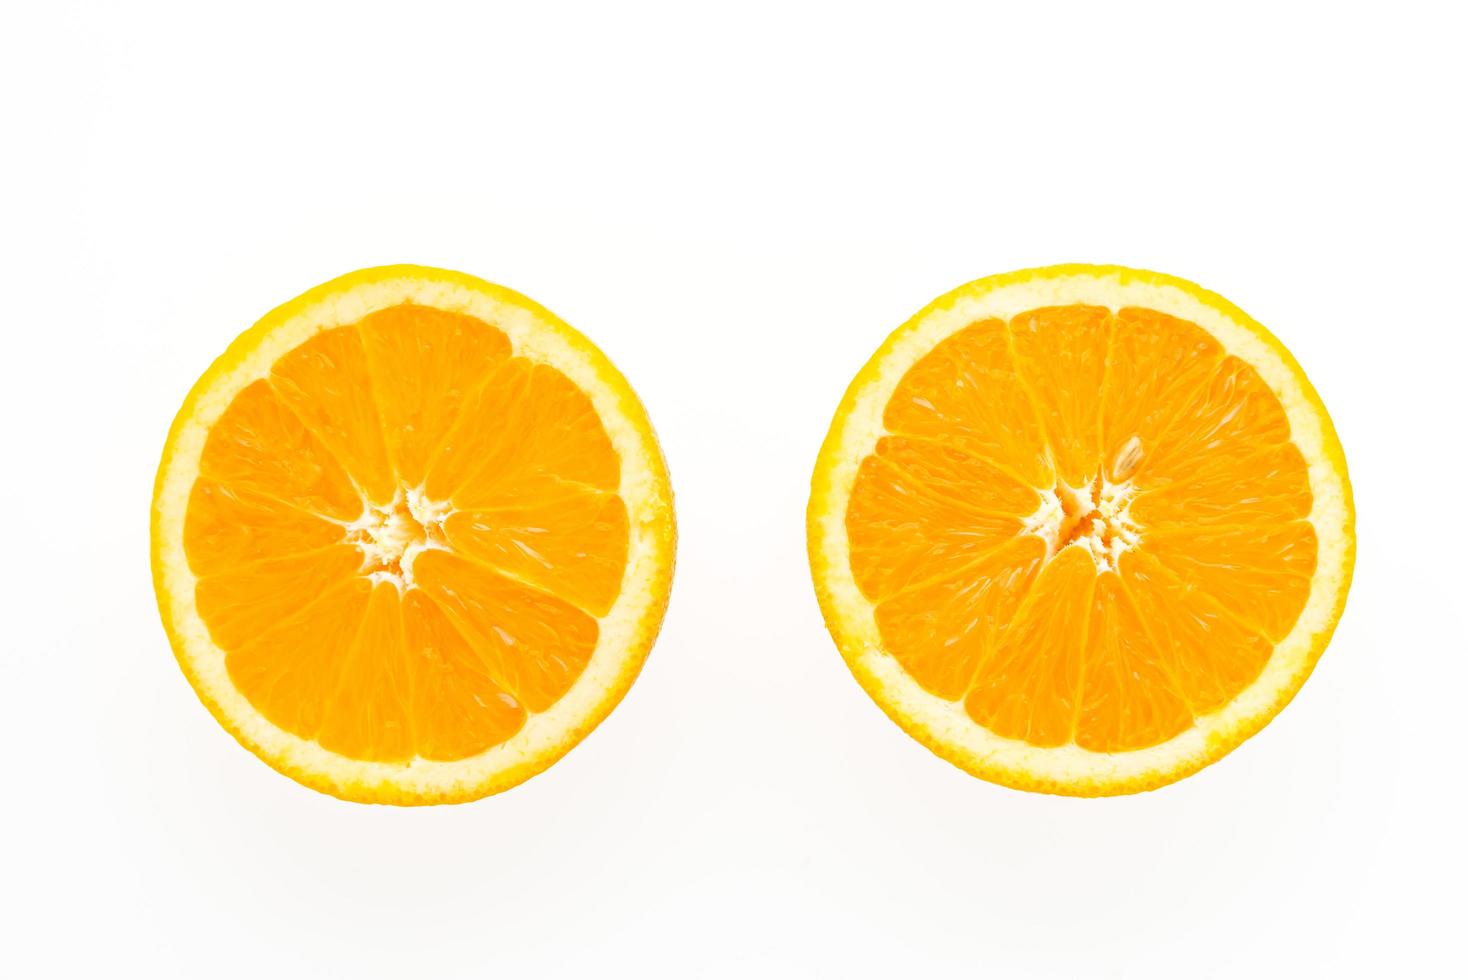 fruit orange isolé sur fond blanc photo